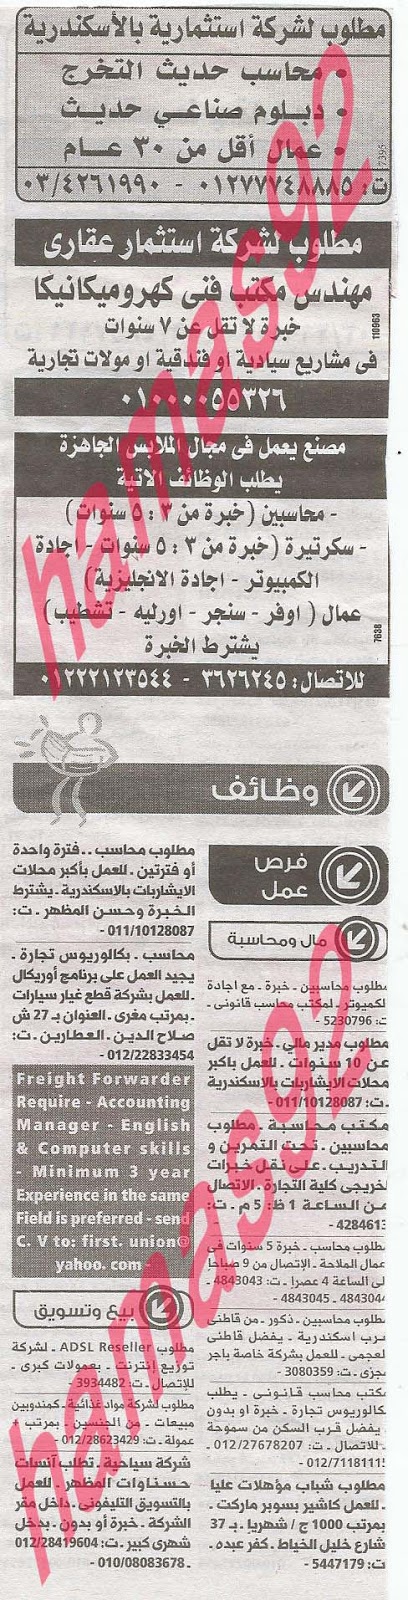 وظائف خالية فى جريدة الوسيط الاسكندرية الاثنين 26-08-2013 %D9%88+%D8%B3+%D8%B3+11